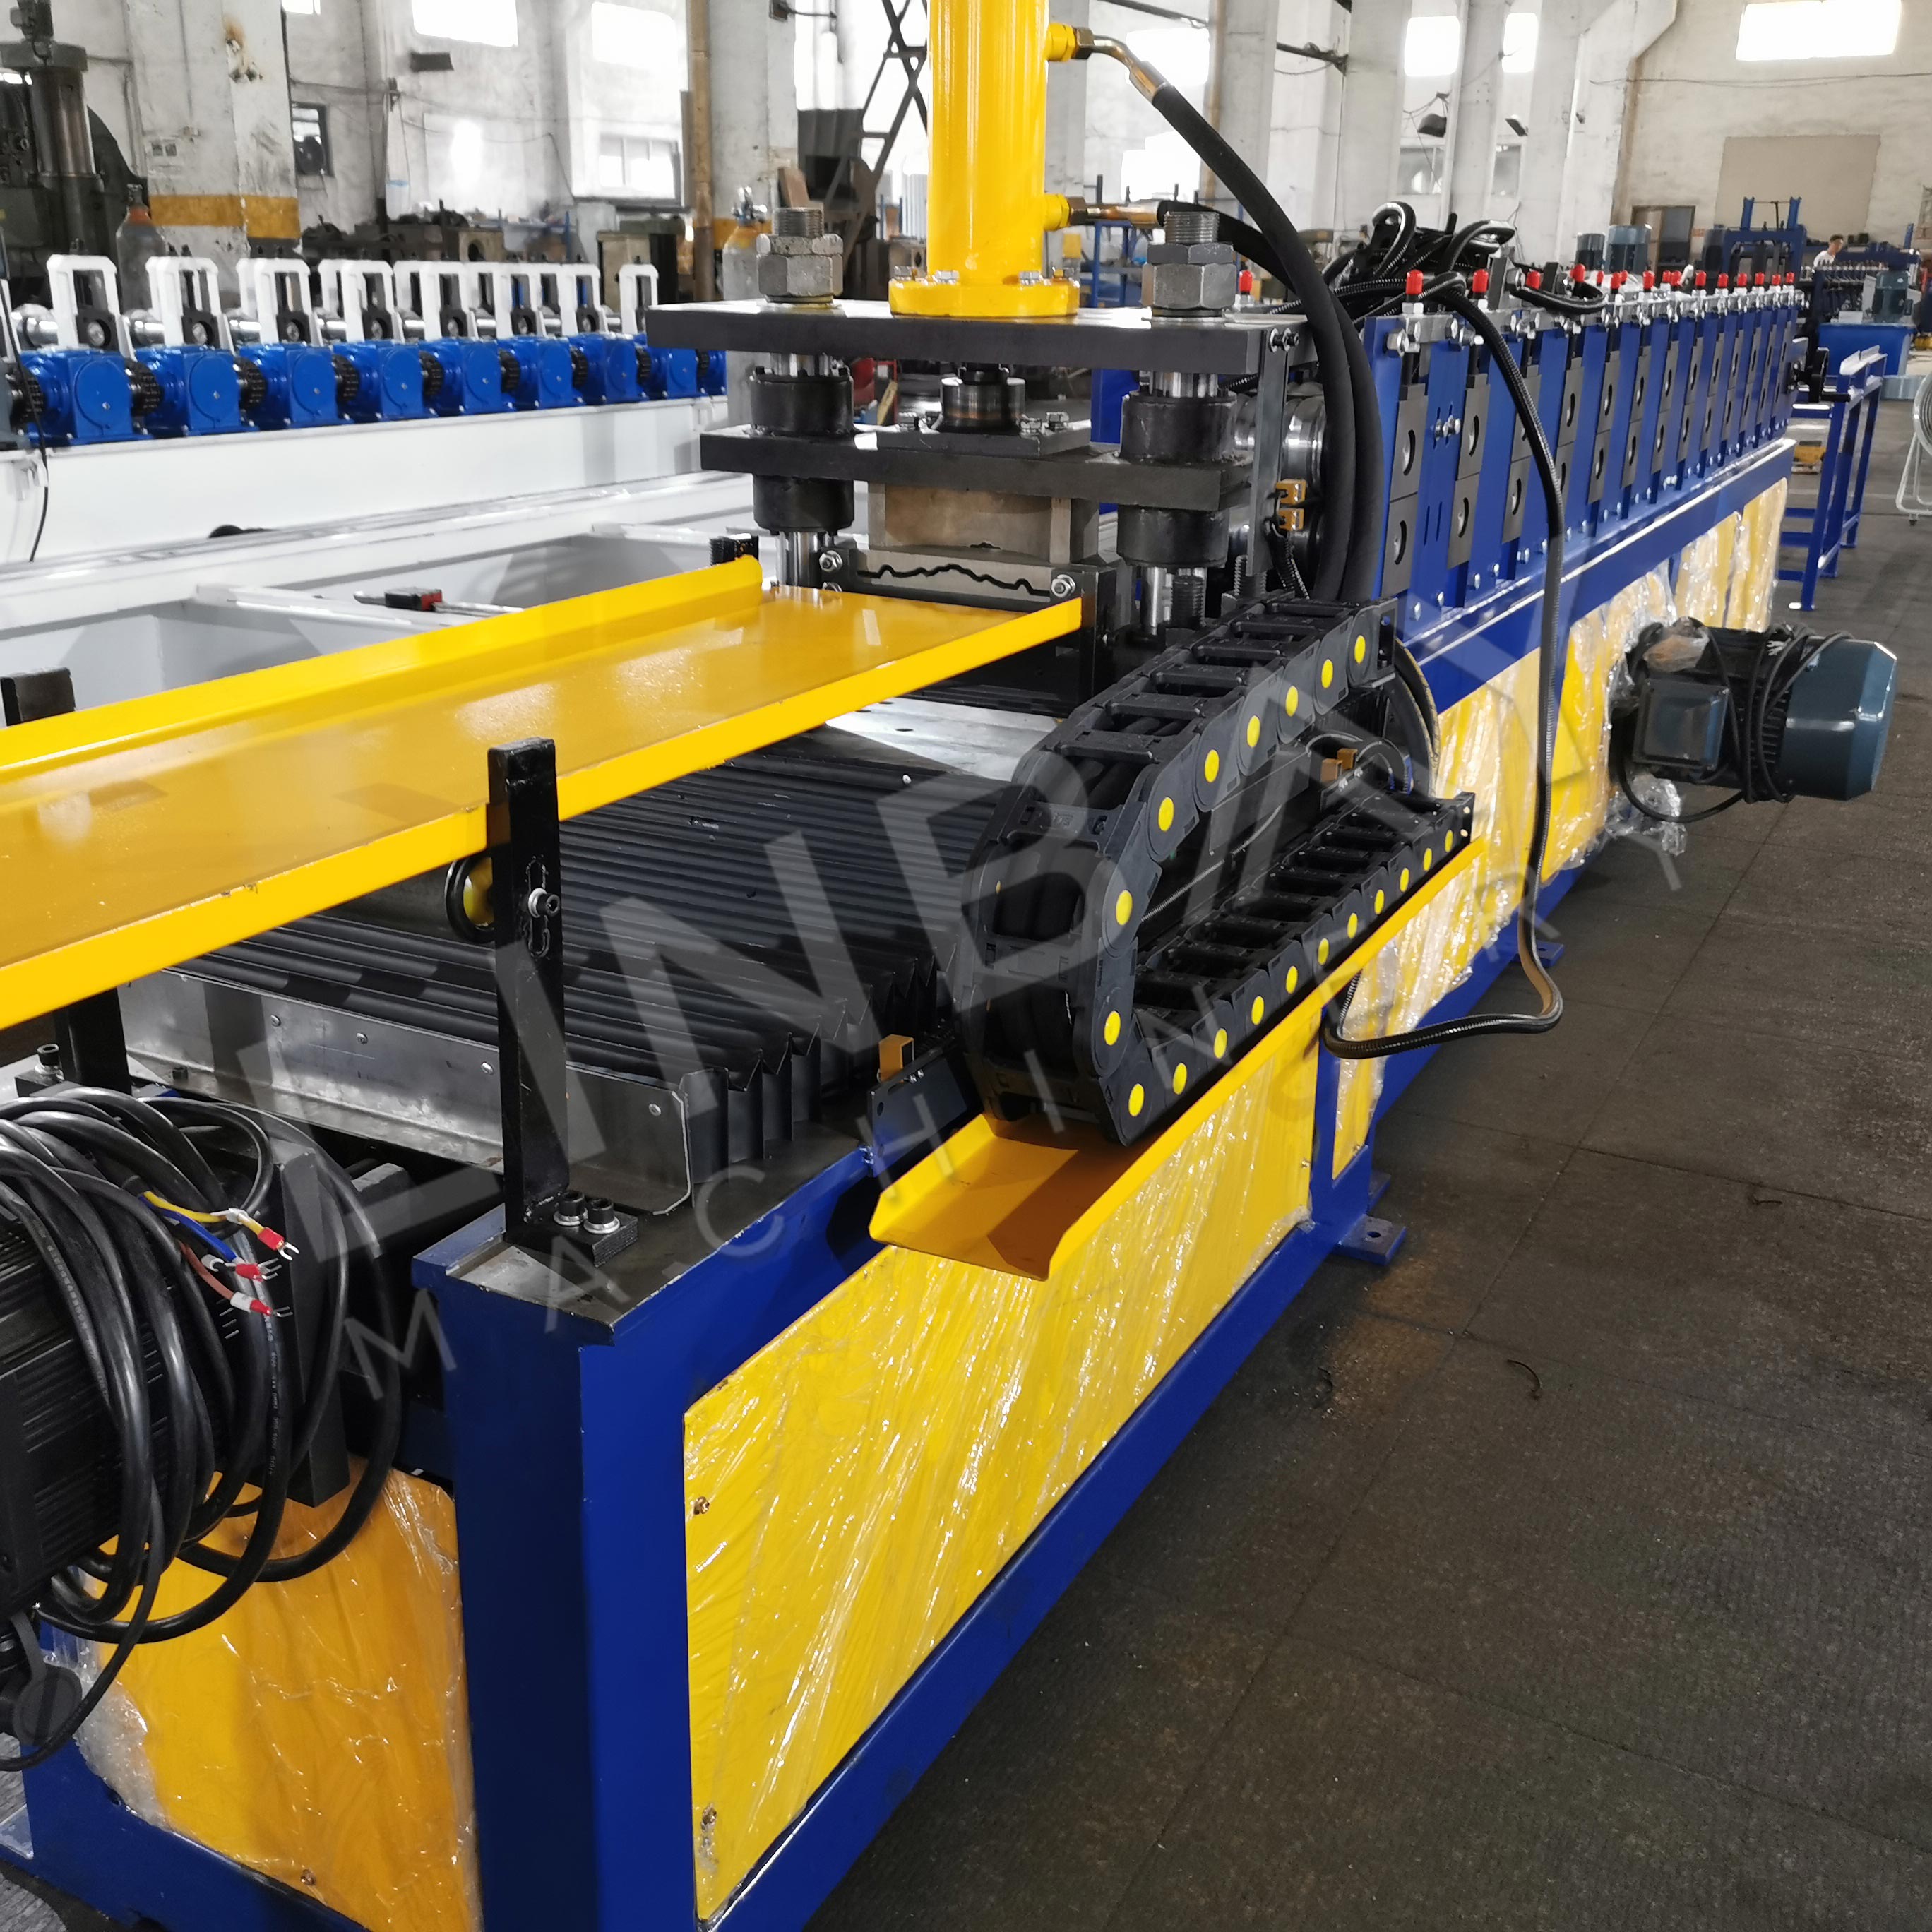 Linbay-Xuất khẩu máy tạo hình cuộn sang Mỹ